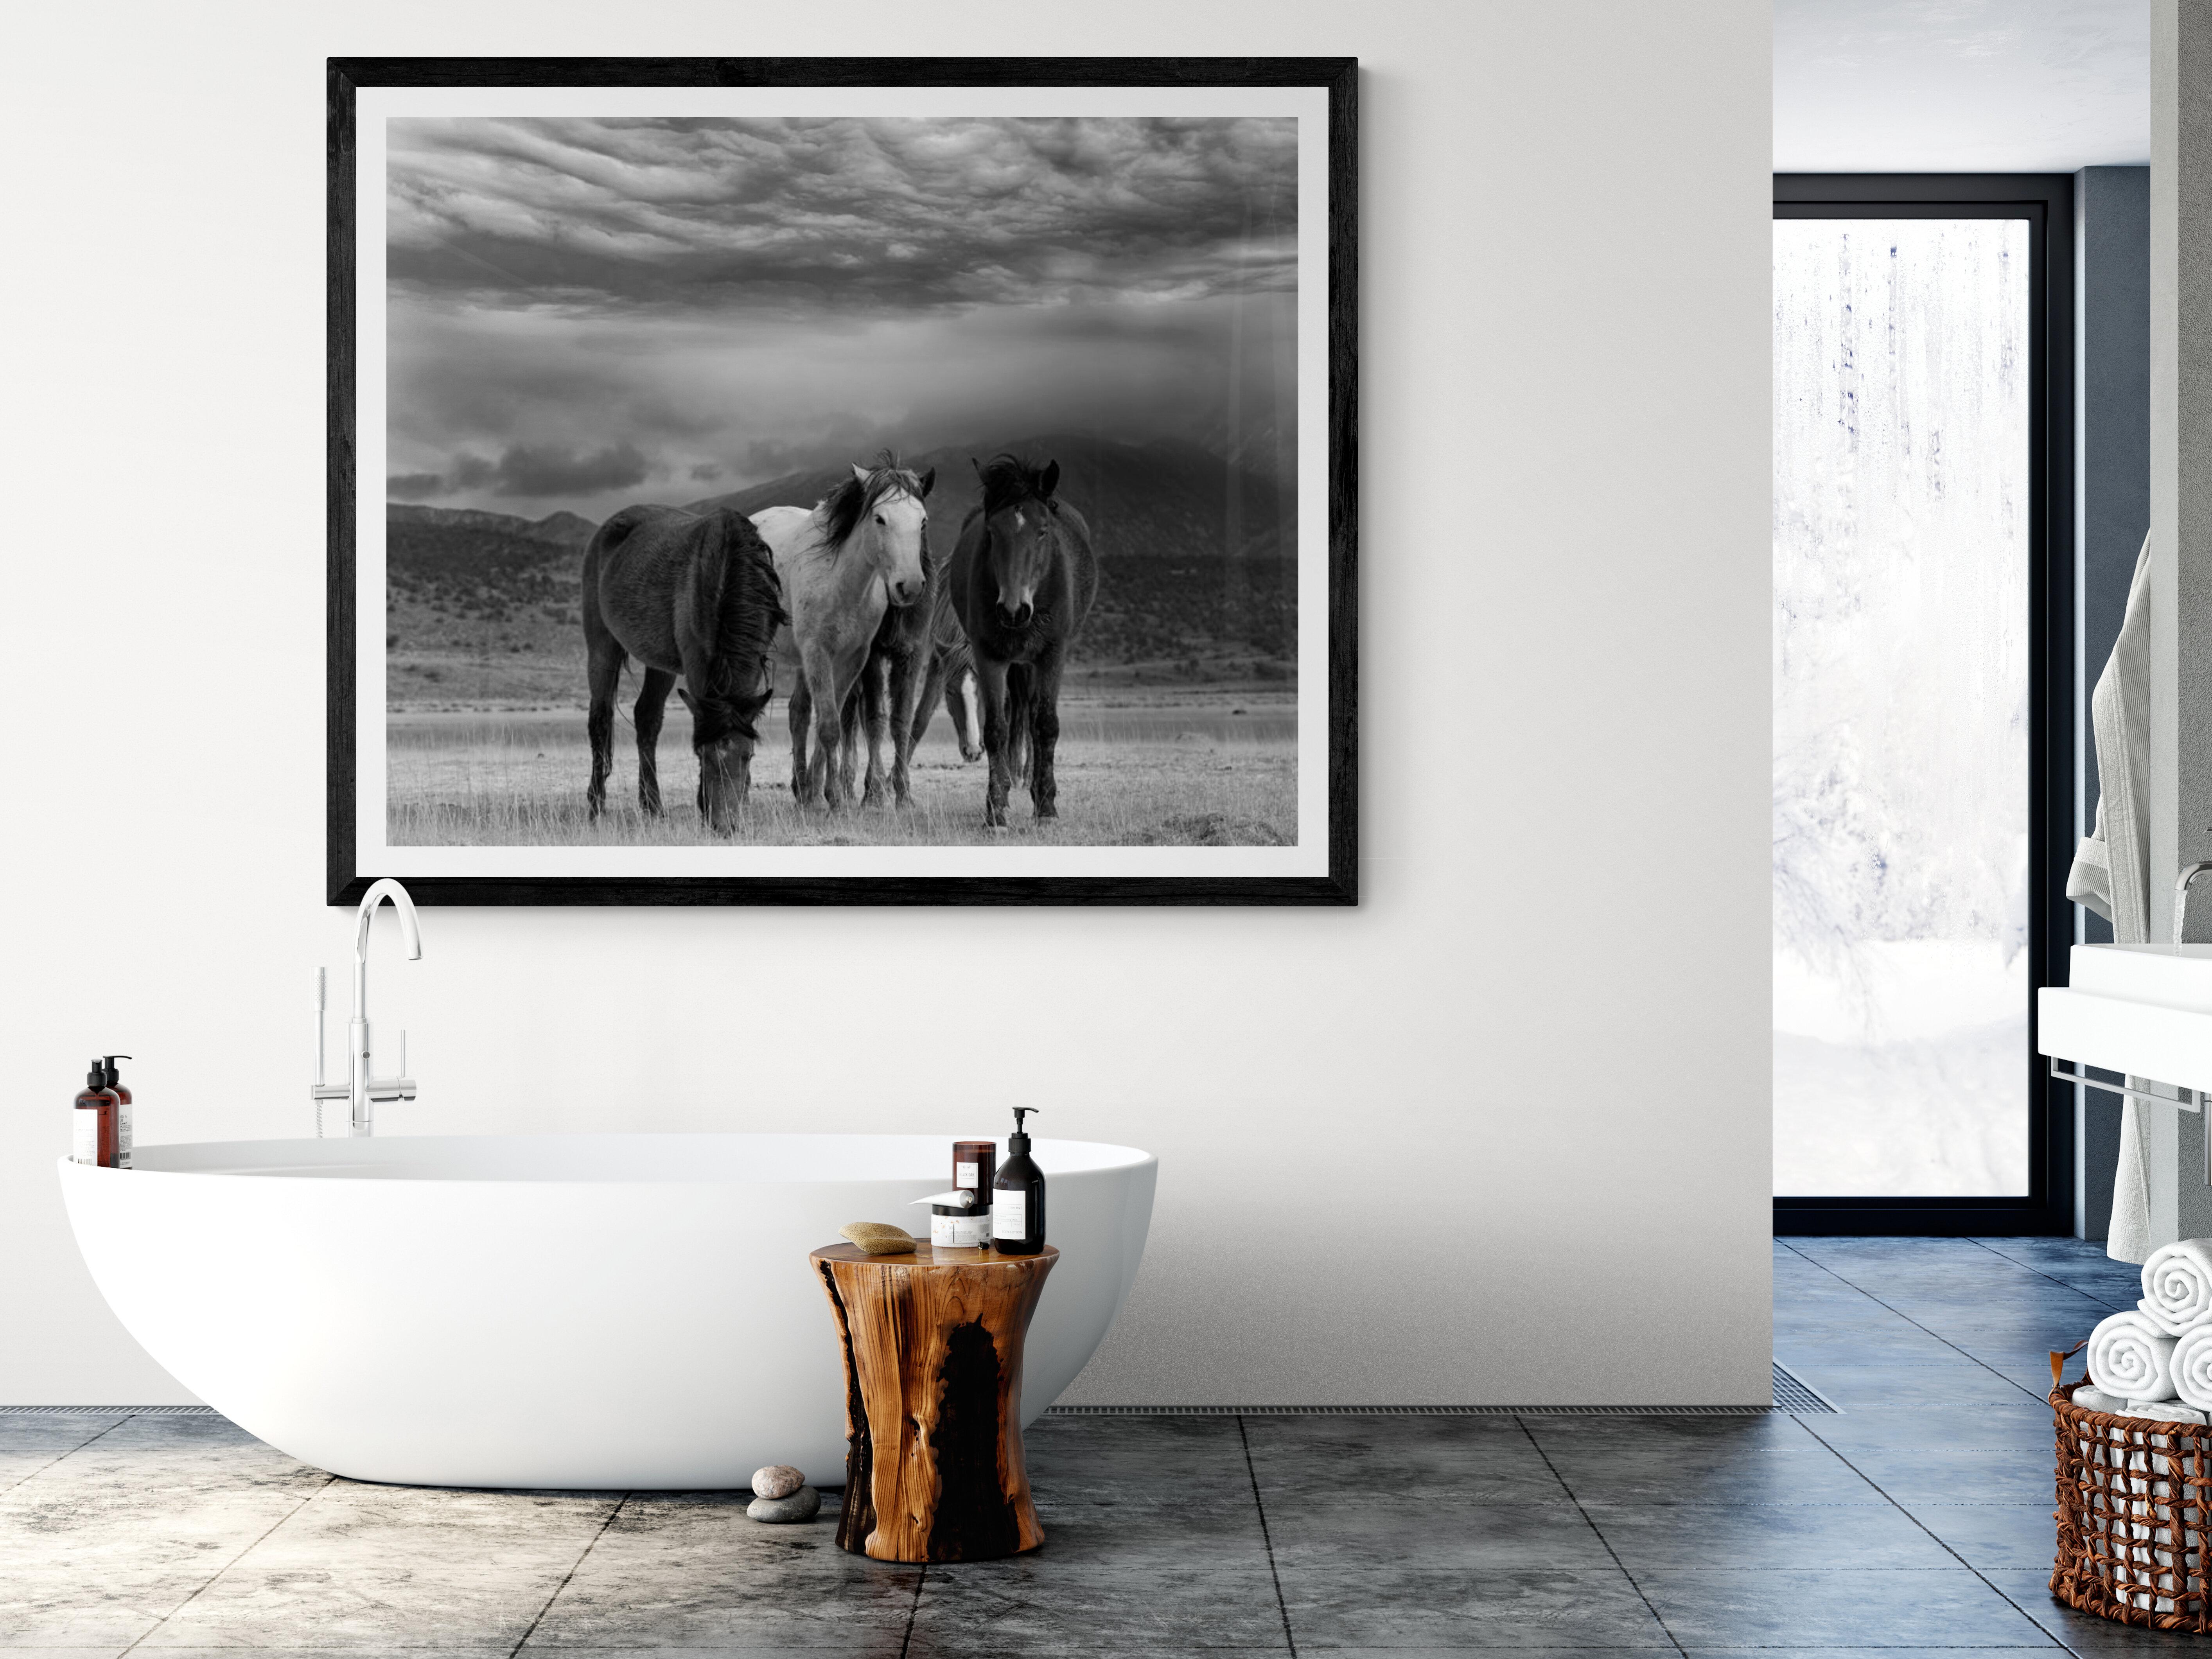 Dies ist eine zeitgenössische Schwarz-Weiß-Fotografie von nordamerikanischen Wildpferden
Fotografie von Shane Russeck
Gedruckt auf Archivglanzpapier 
Einrahmung verfügbar. Erkundigen Sie sich nach den Preisen. 
28x40 Ausgabe von 
50 Signiert und